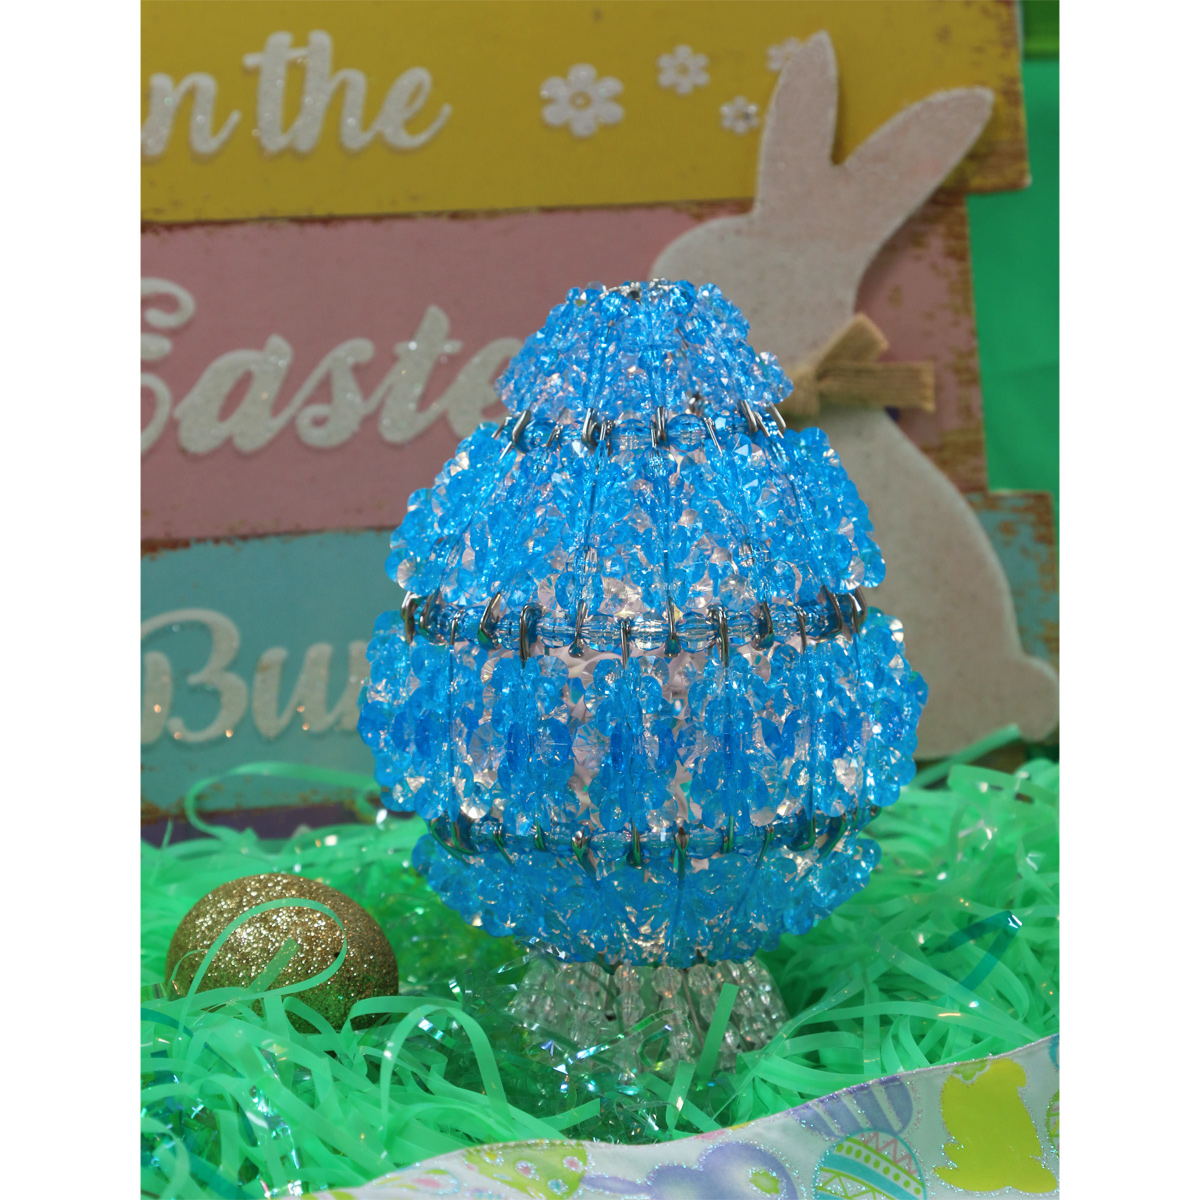 Beading Kit - Craft Kit - Beaded Egg - Easter Egg Decorations